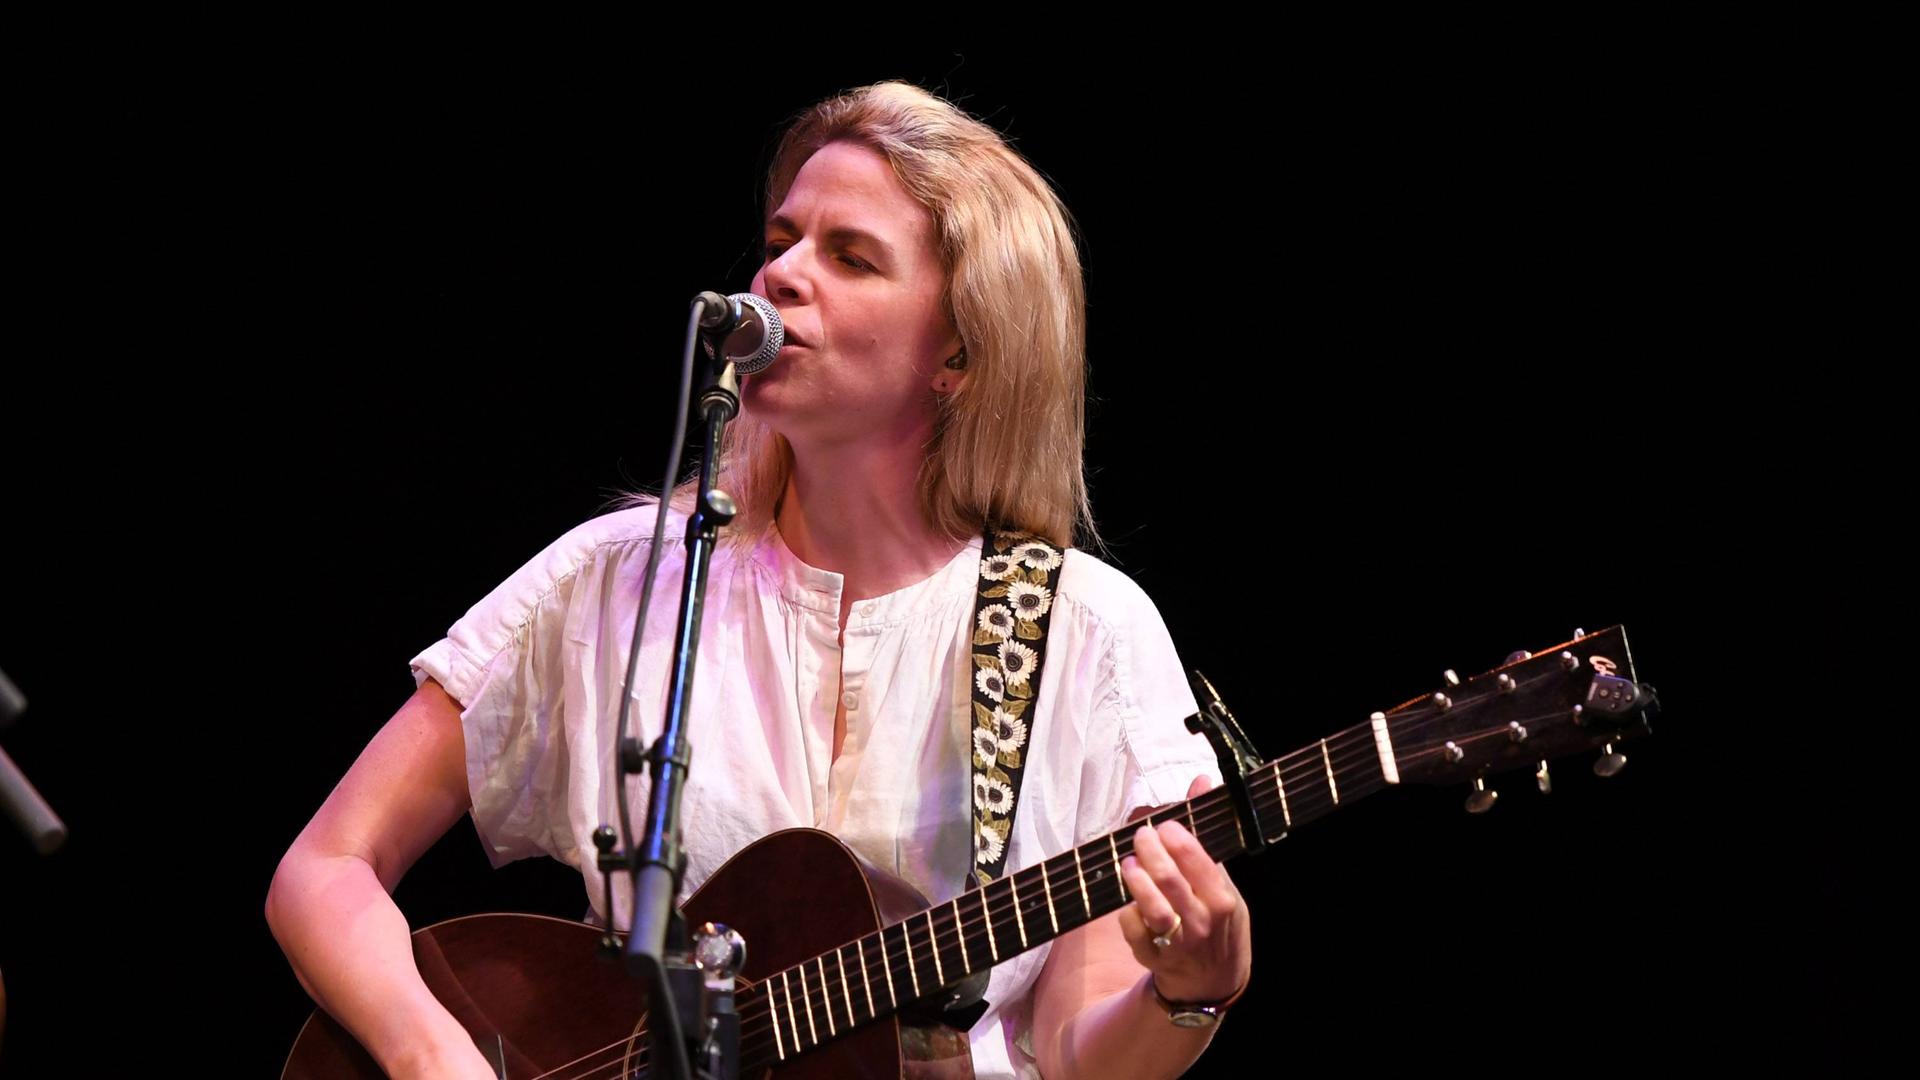 Eine Sängerin mit schulterlangen, blonden Haaren steht unprätentiös auf einer Bühne und singt, während sie sich mit der Gitarre begleitet.